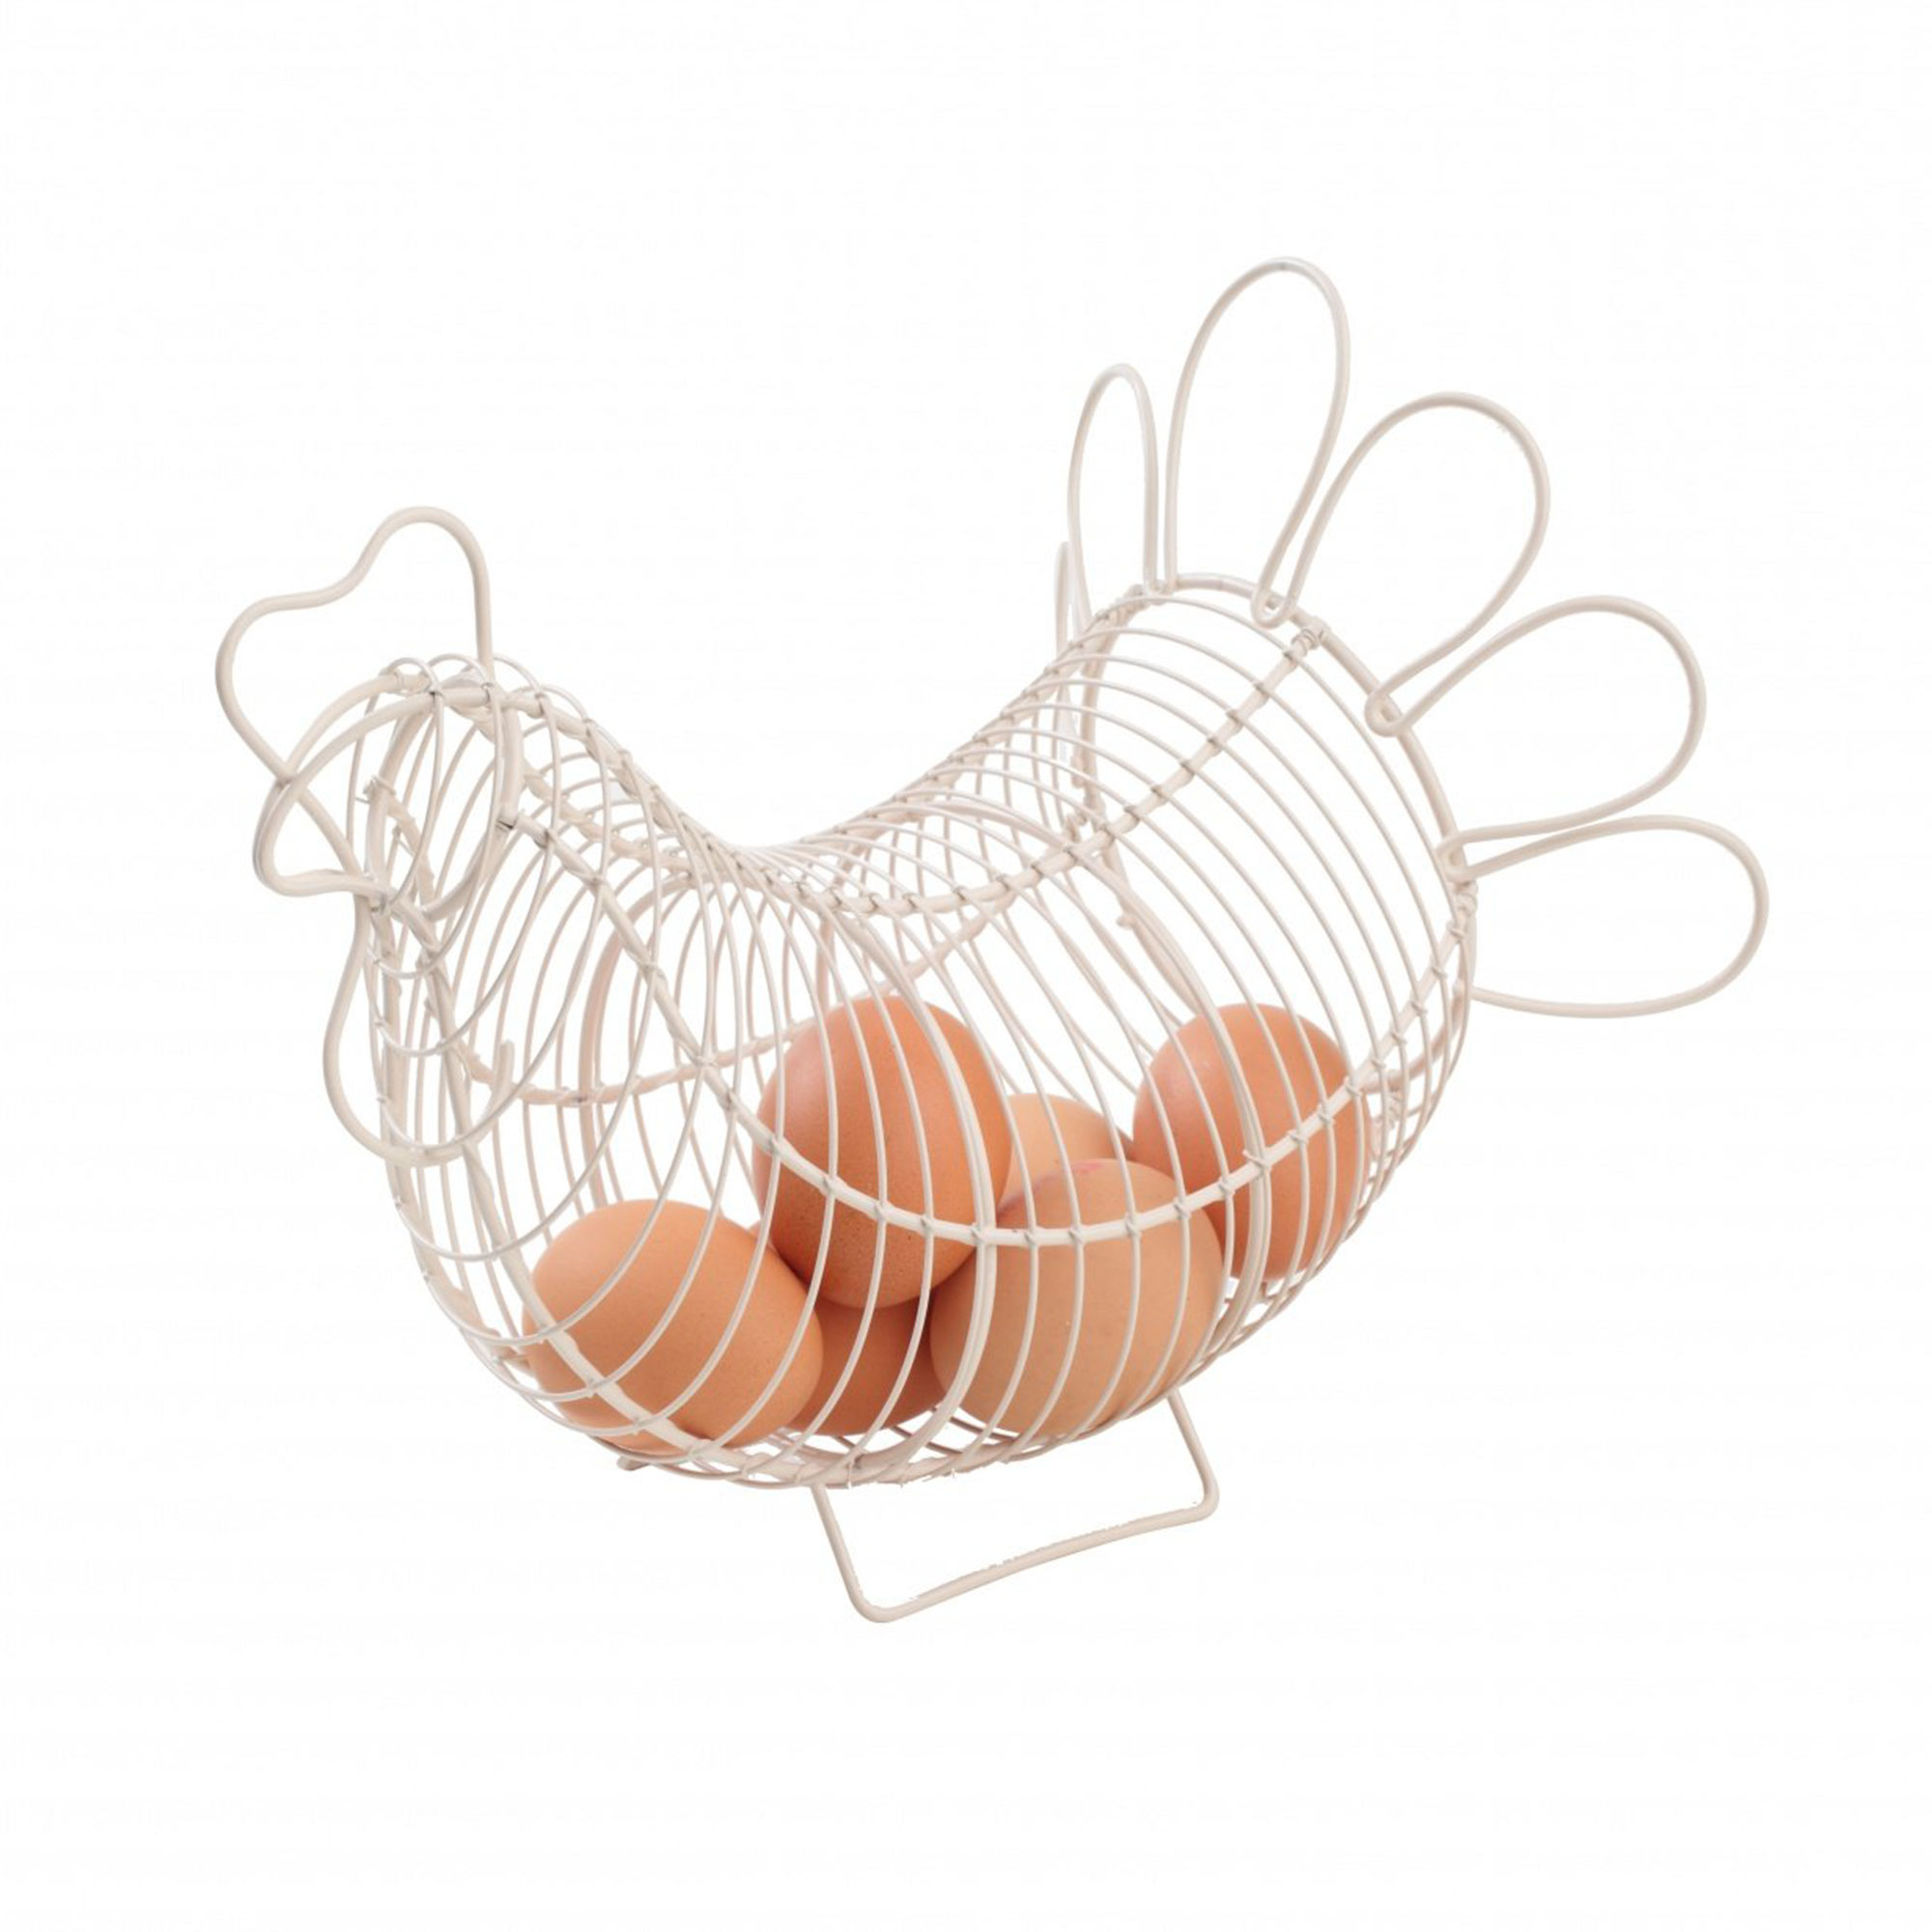 Корзина для яиц малая T&G Provence in cream аромадиффузор poemes de provence прованс просеко